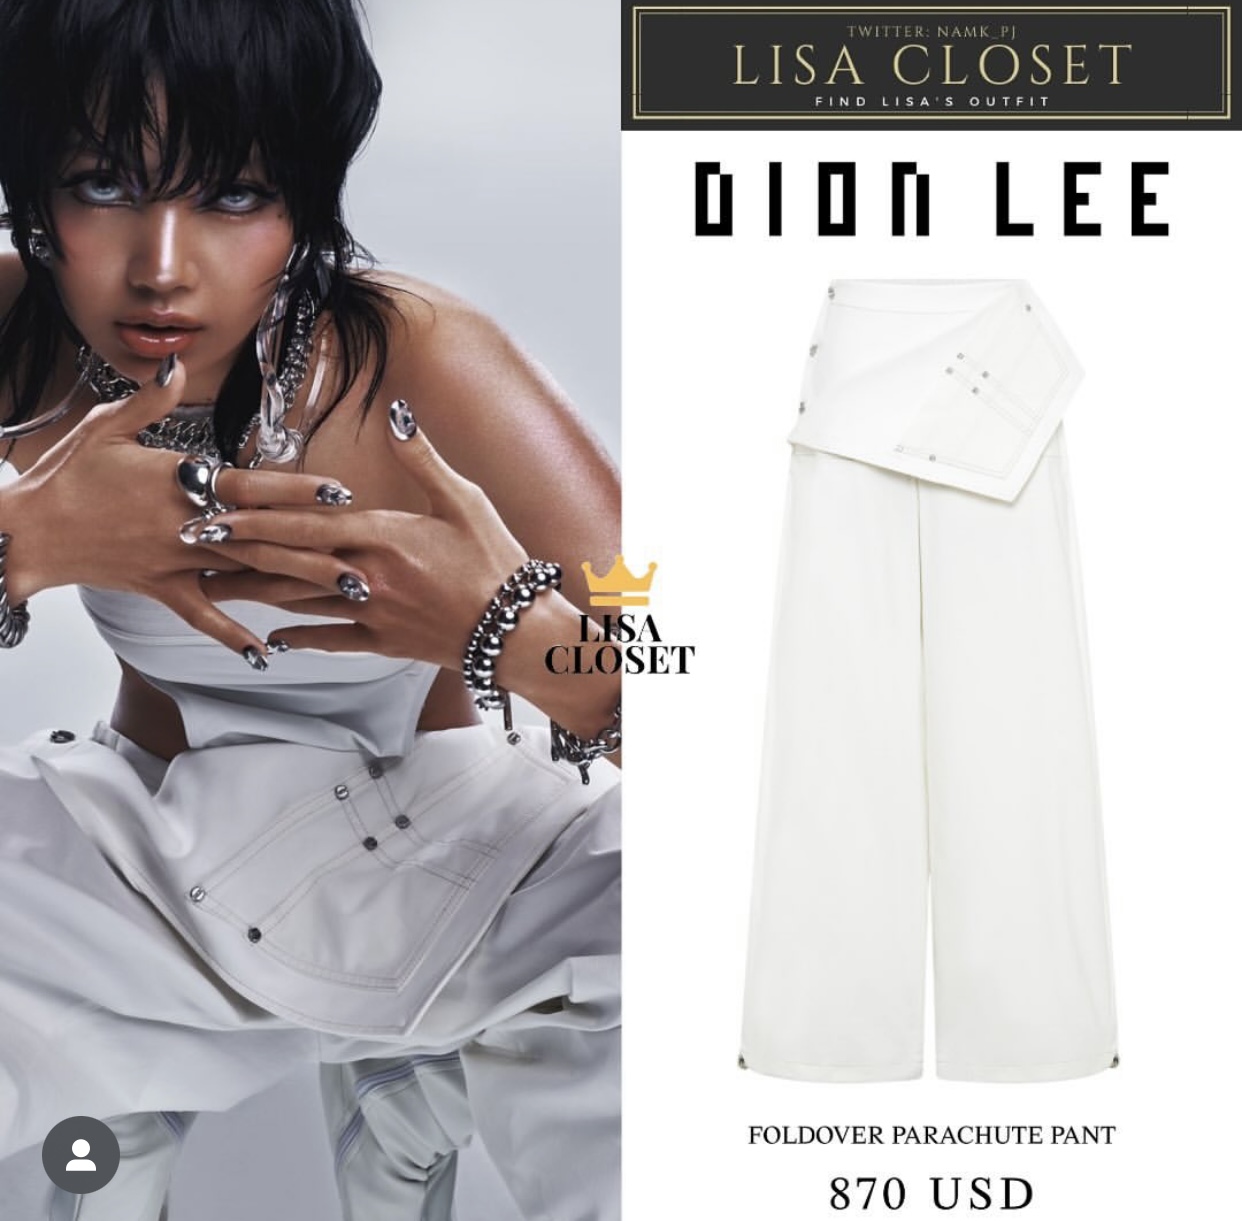 Diện chiếc quần yếm màu trắng phom dáng rộng rãi, năng động cùng áo croptop khoe eo, Lisa khiến các tín đồ săn lùng thiết kế này để có được những khoảnh khắc đồng điệu với nữ idol. Đây là sản phẩm của nhà mốt Dion Lee có giá 870 USD (khoảng 21,7 triệu đồng).